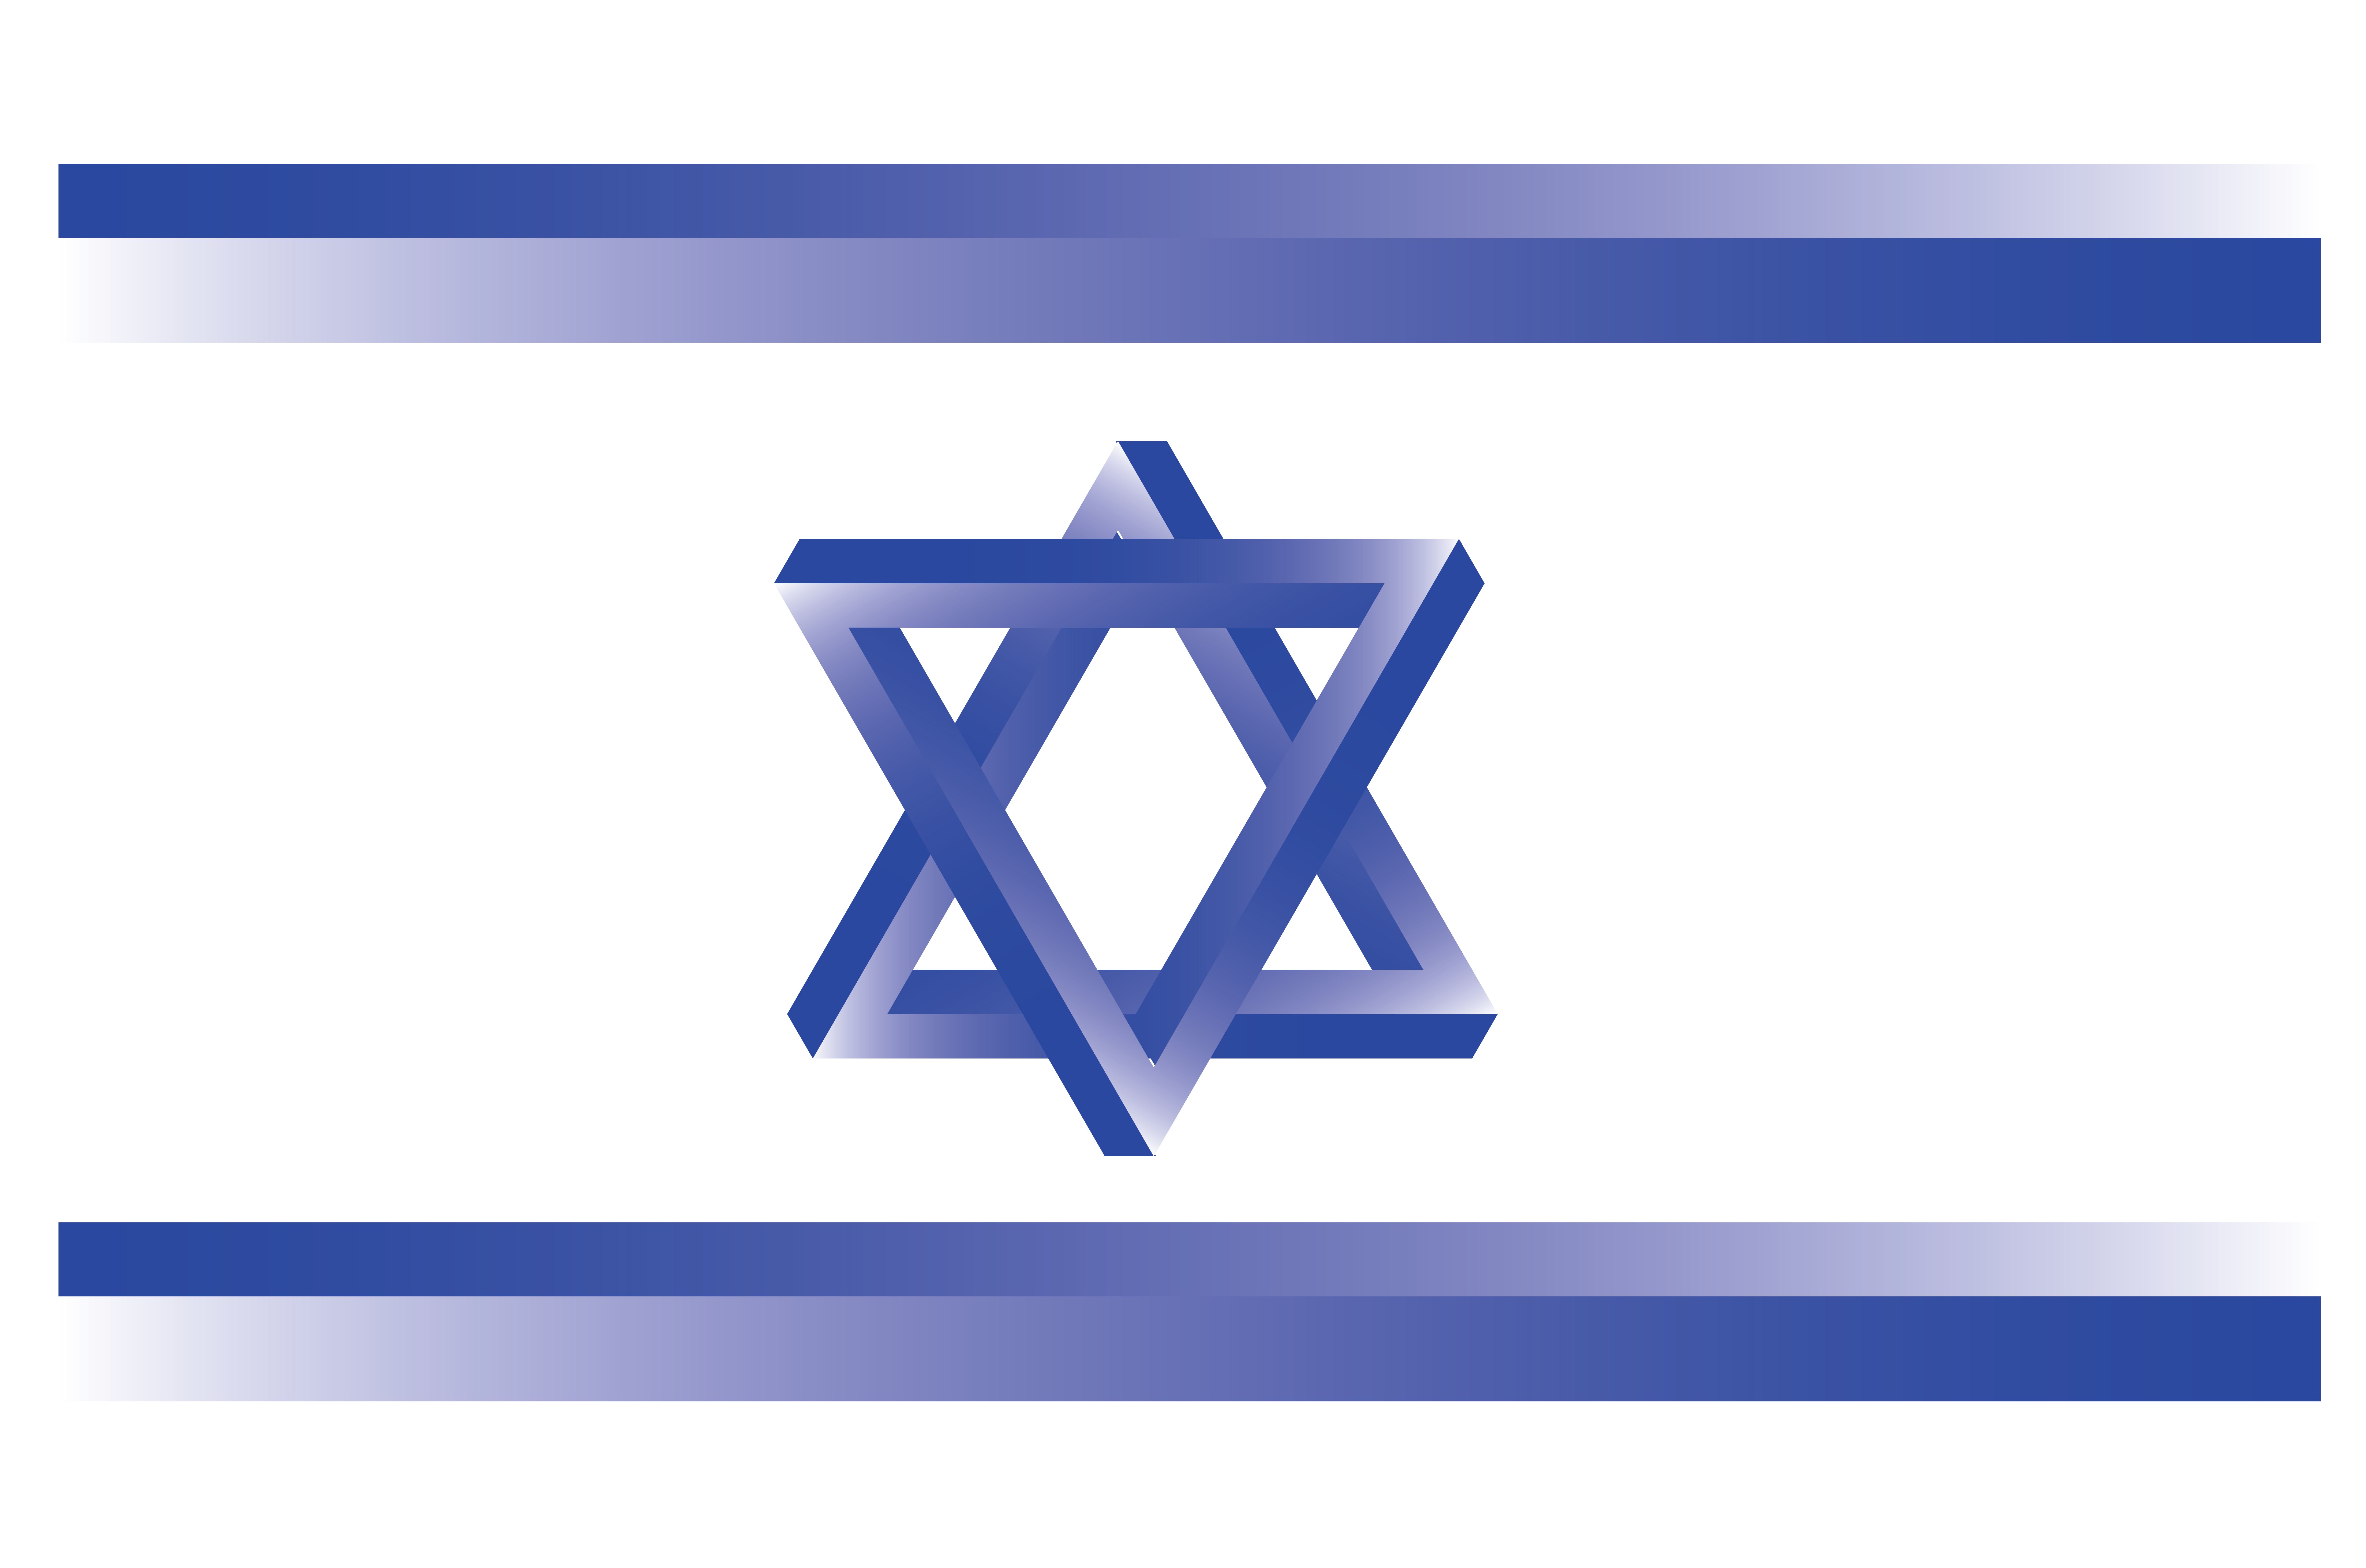 Скачать обои бесплатно Флаги, Разное, Флаг, Эмблема, Флаг Израиля, Израильский Флаг картинка на рабочий стол ПК